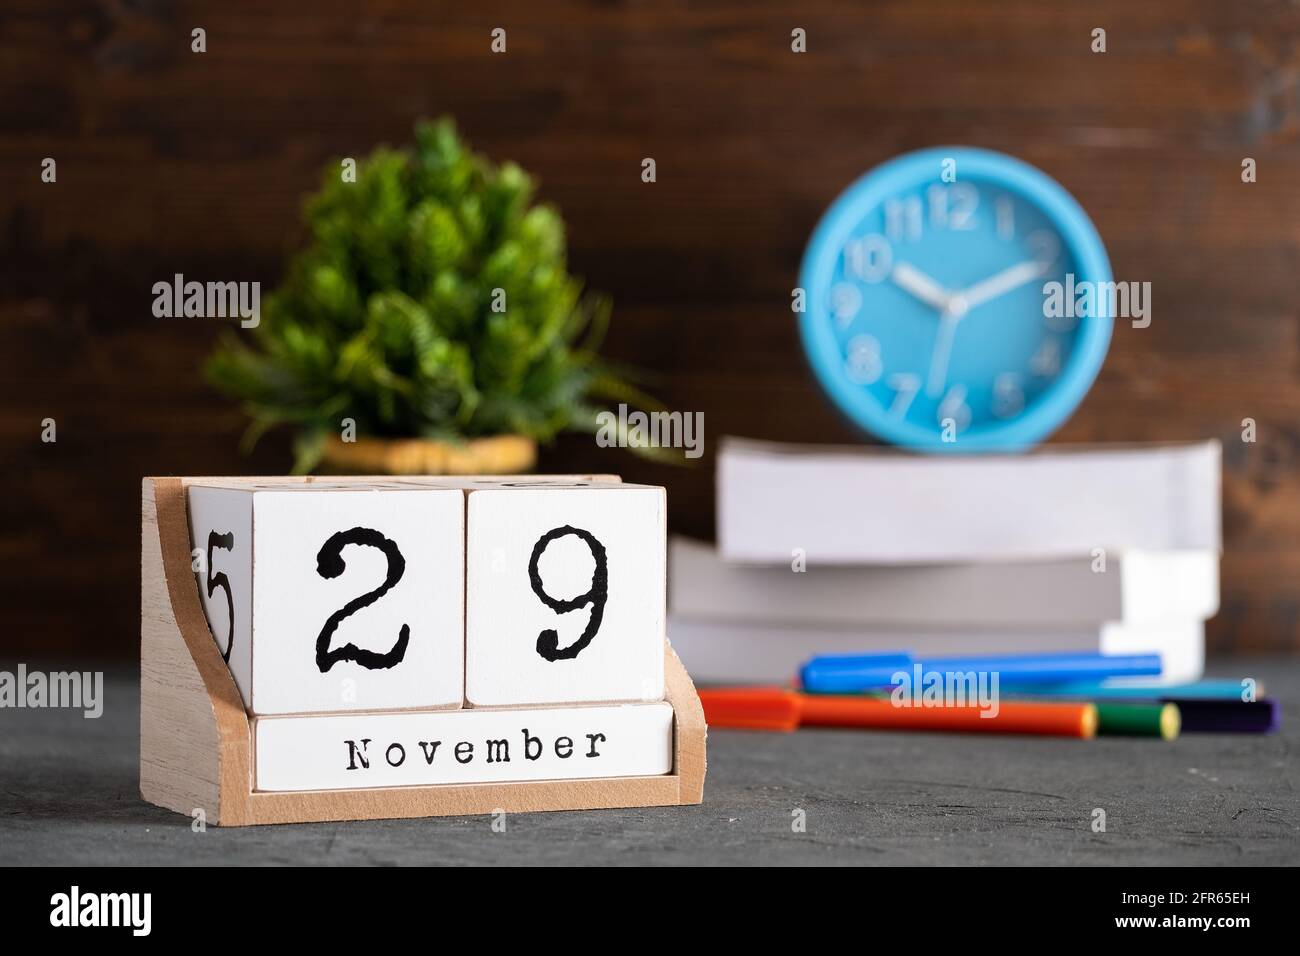 November. November 29 Holzwürfelkalender mit unscharfen Objekten auf dem Hintergrund. Stockfoto